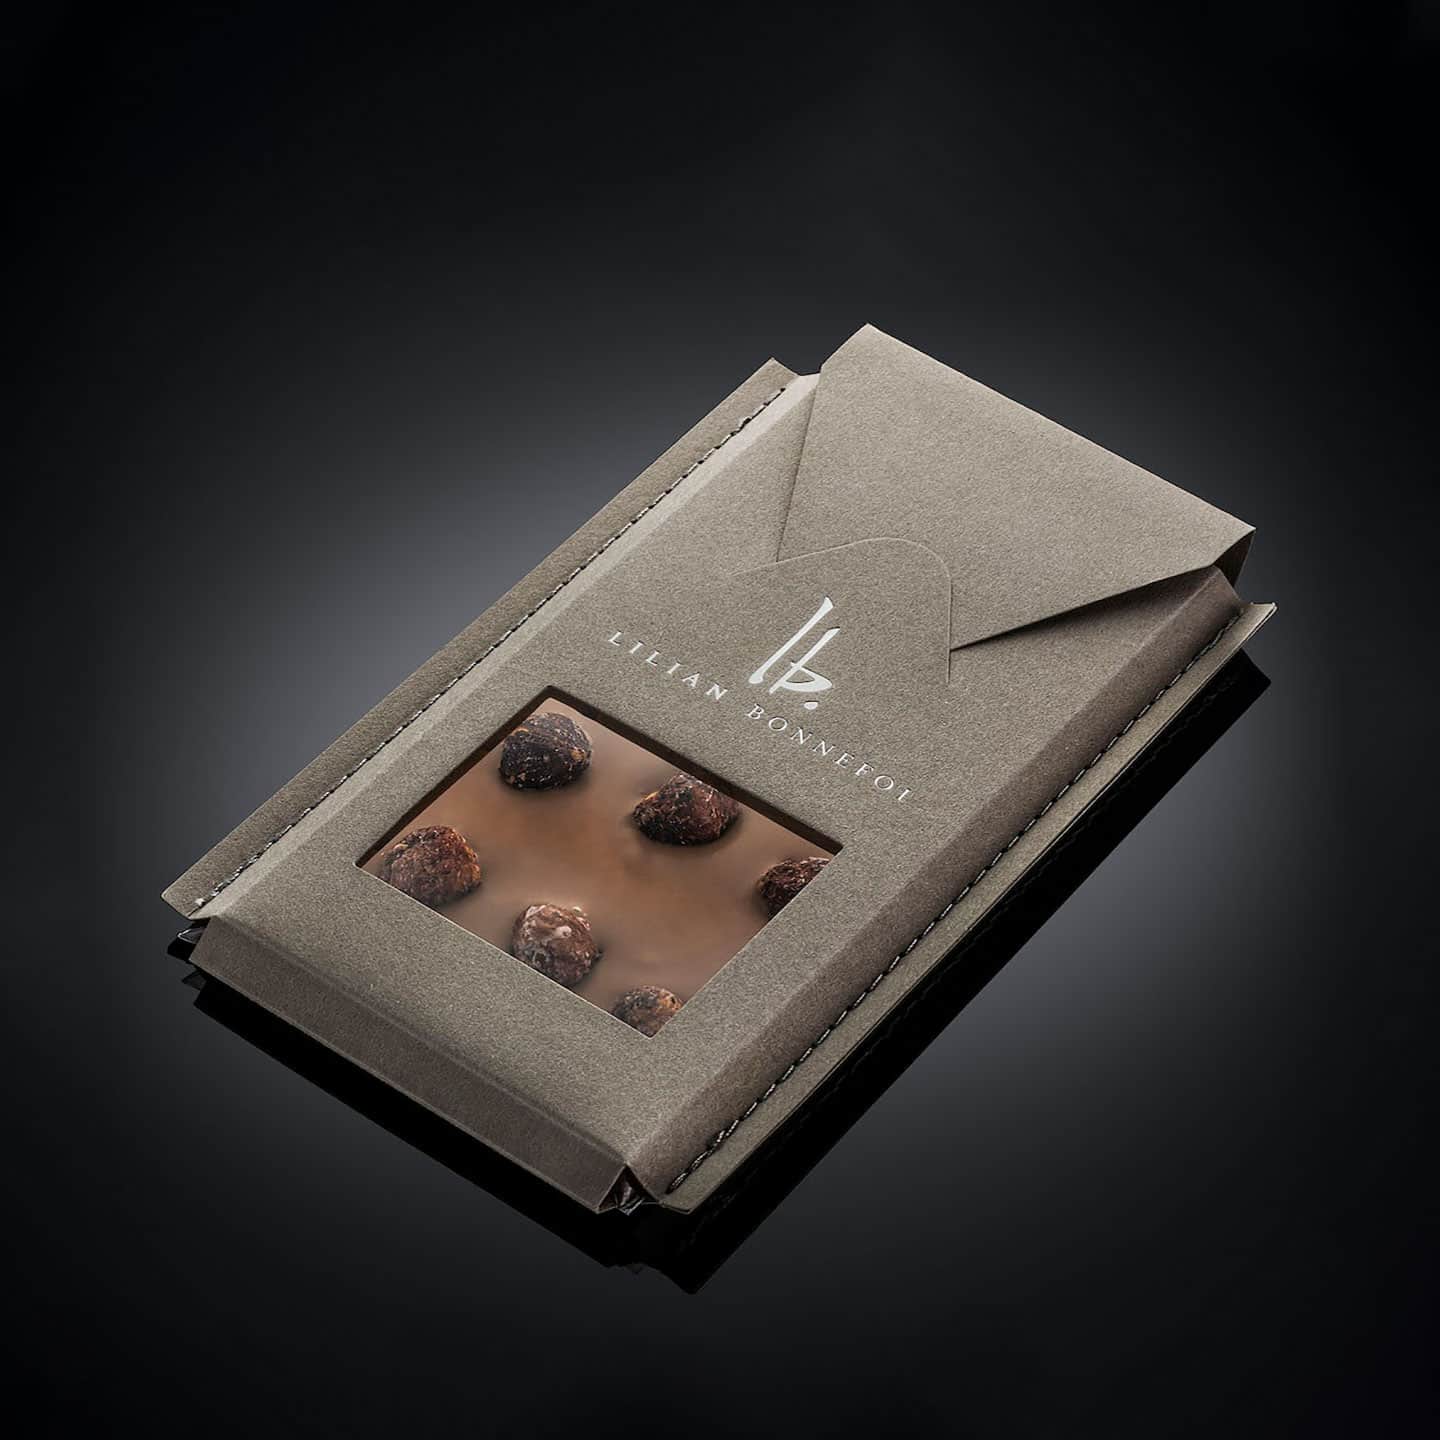 Tablette Chocolat Lait Noisettes 36% 120g